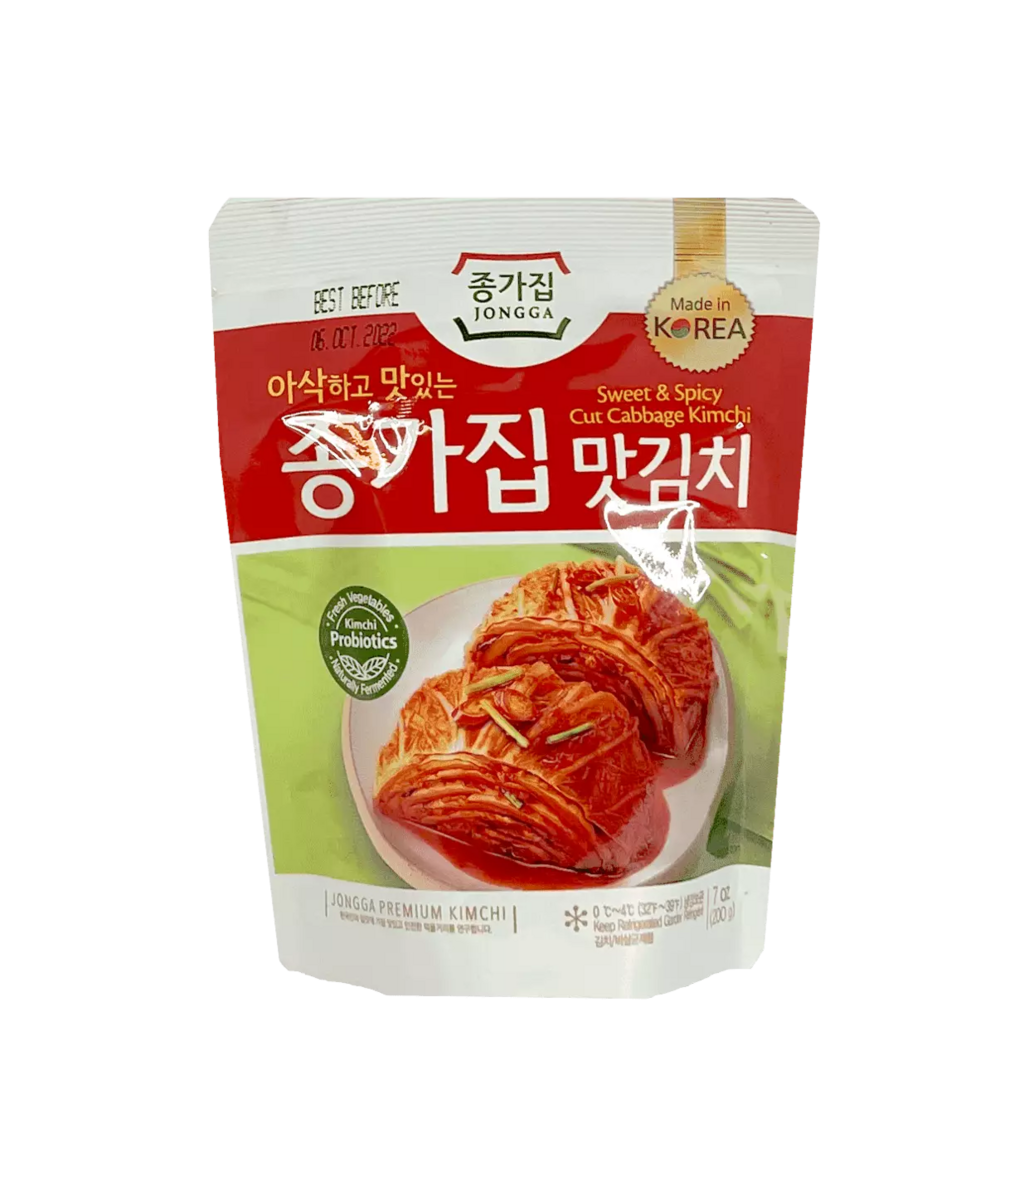 泡菜 200g Chongga 韩国